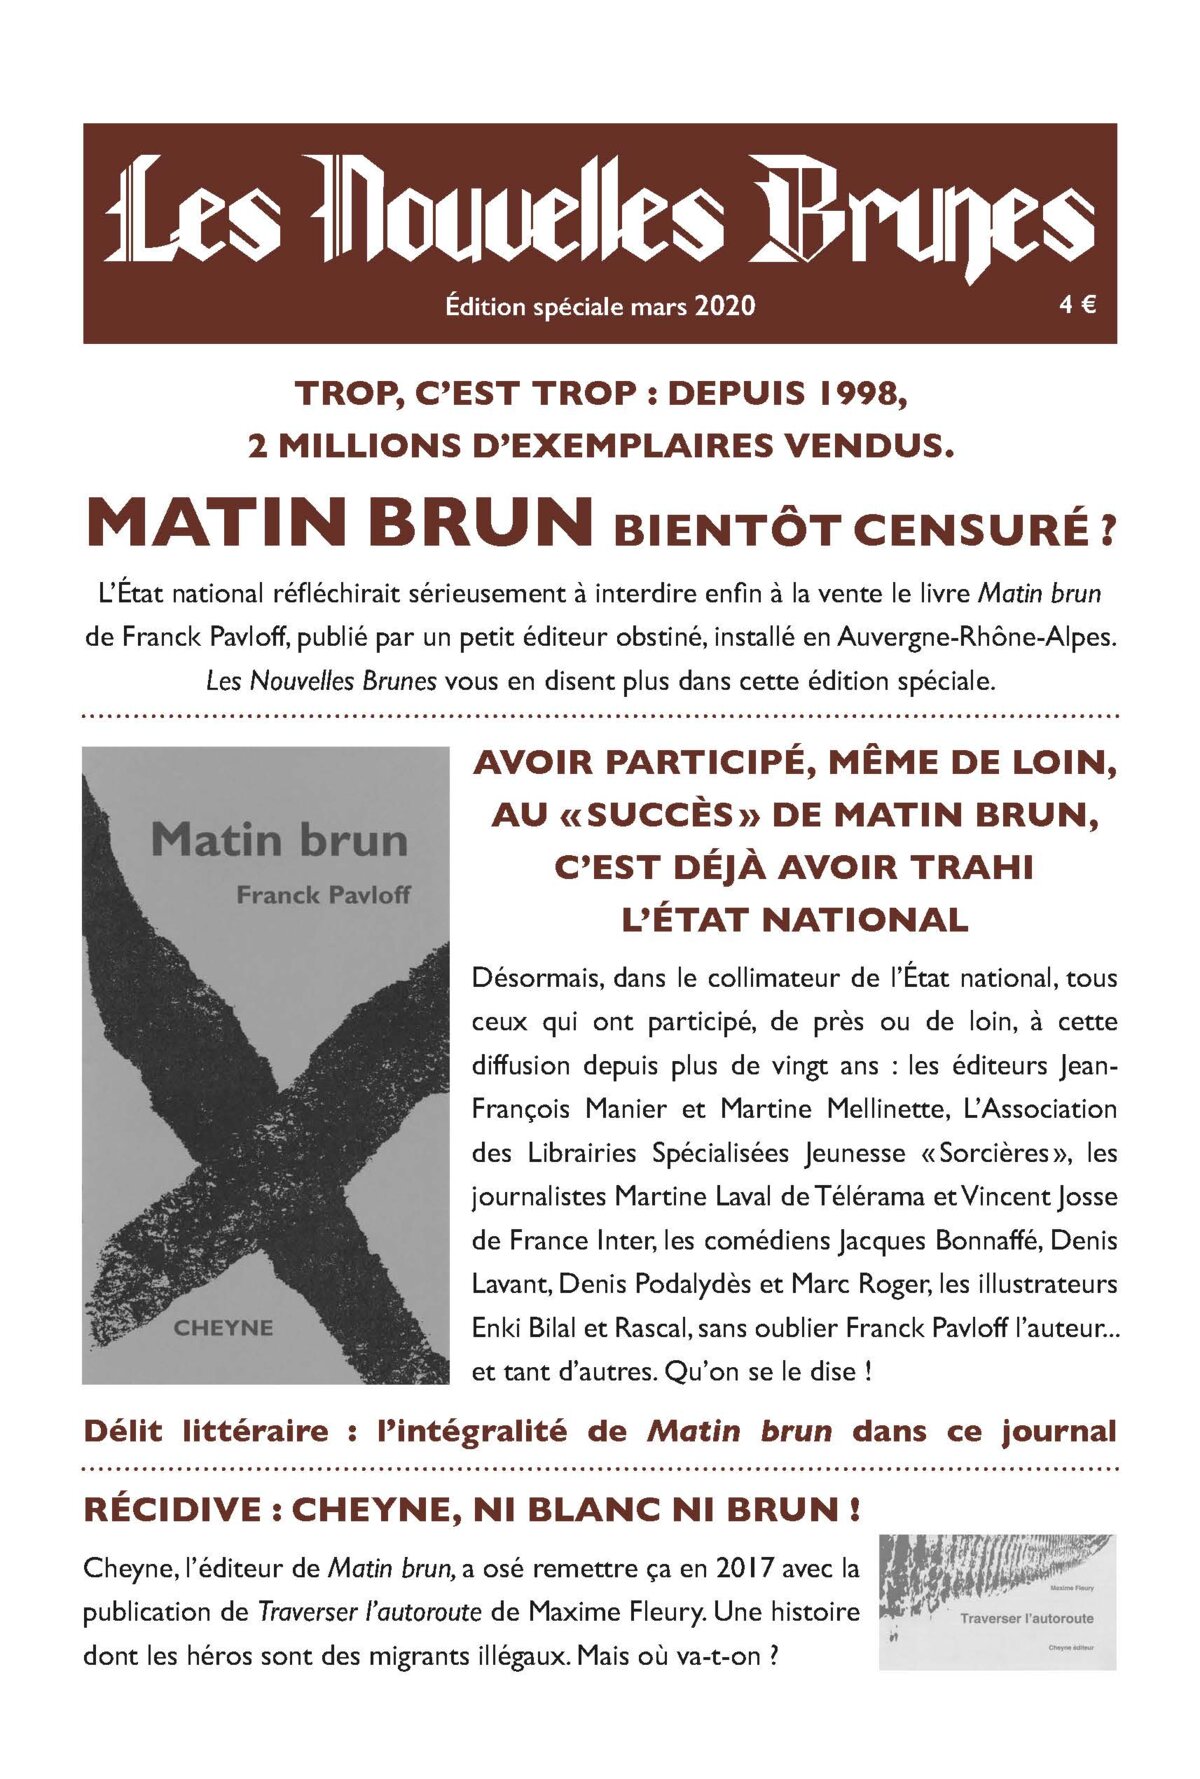 MATIN BRUN (French Edition)